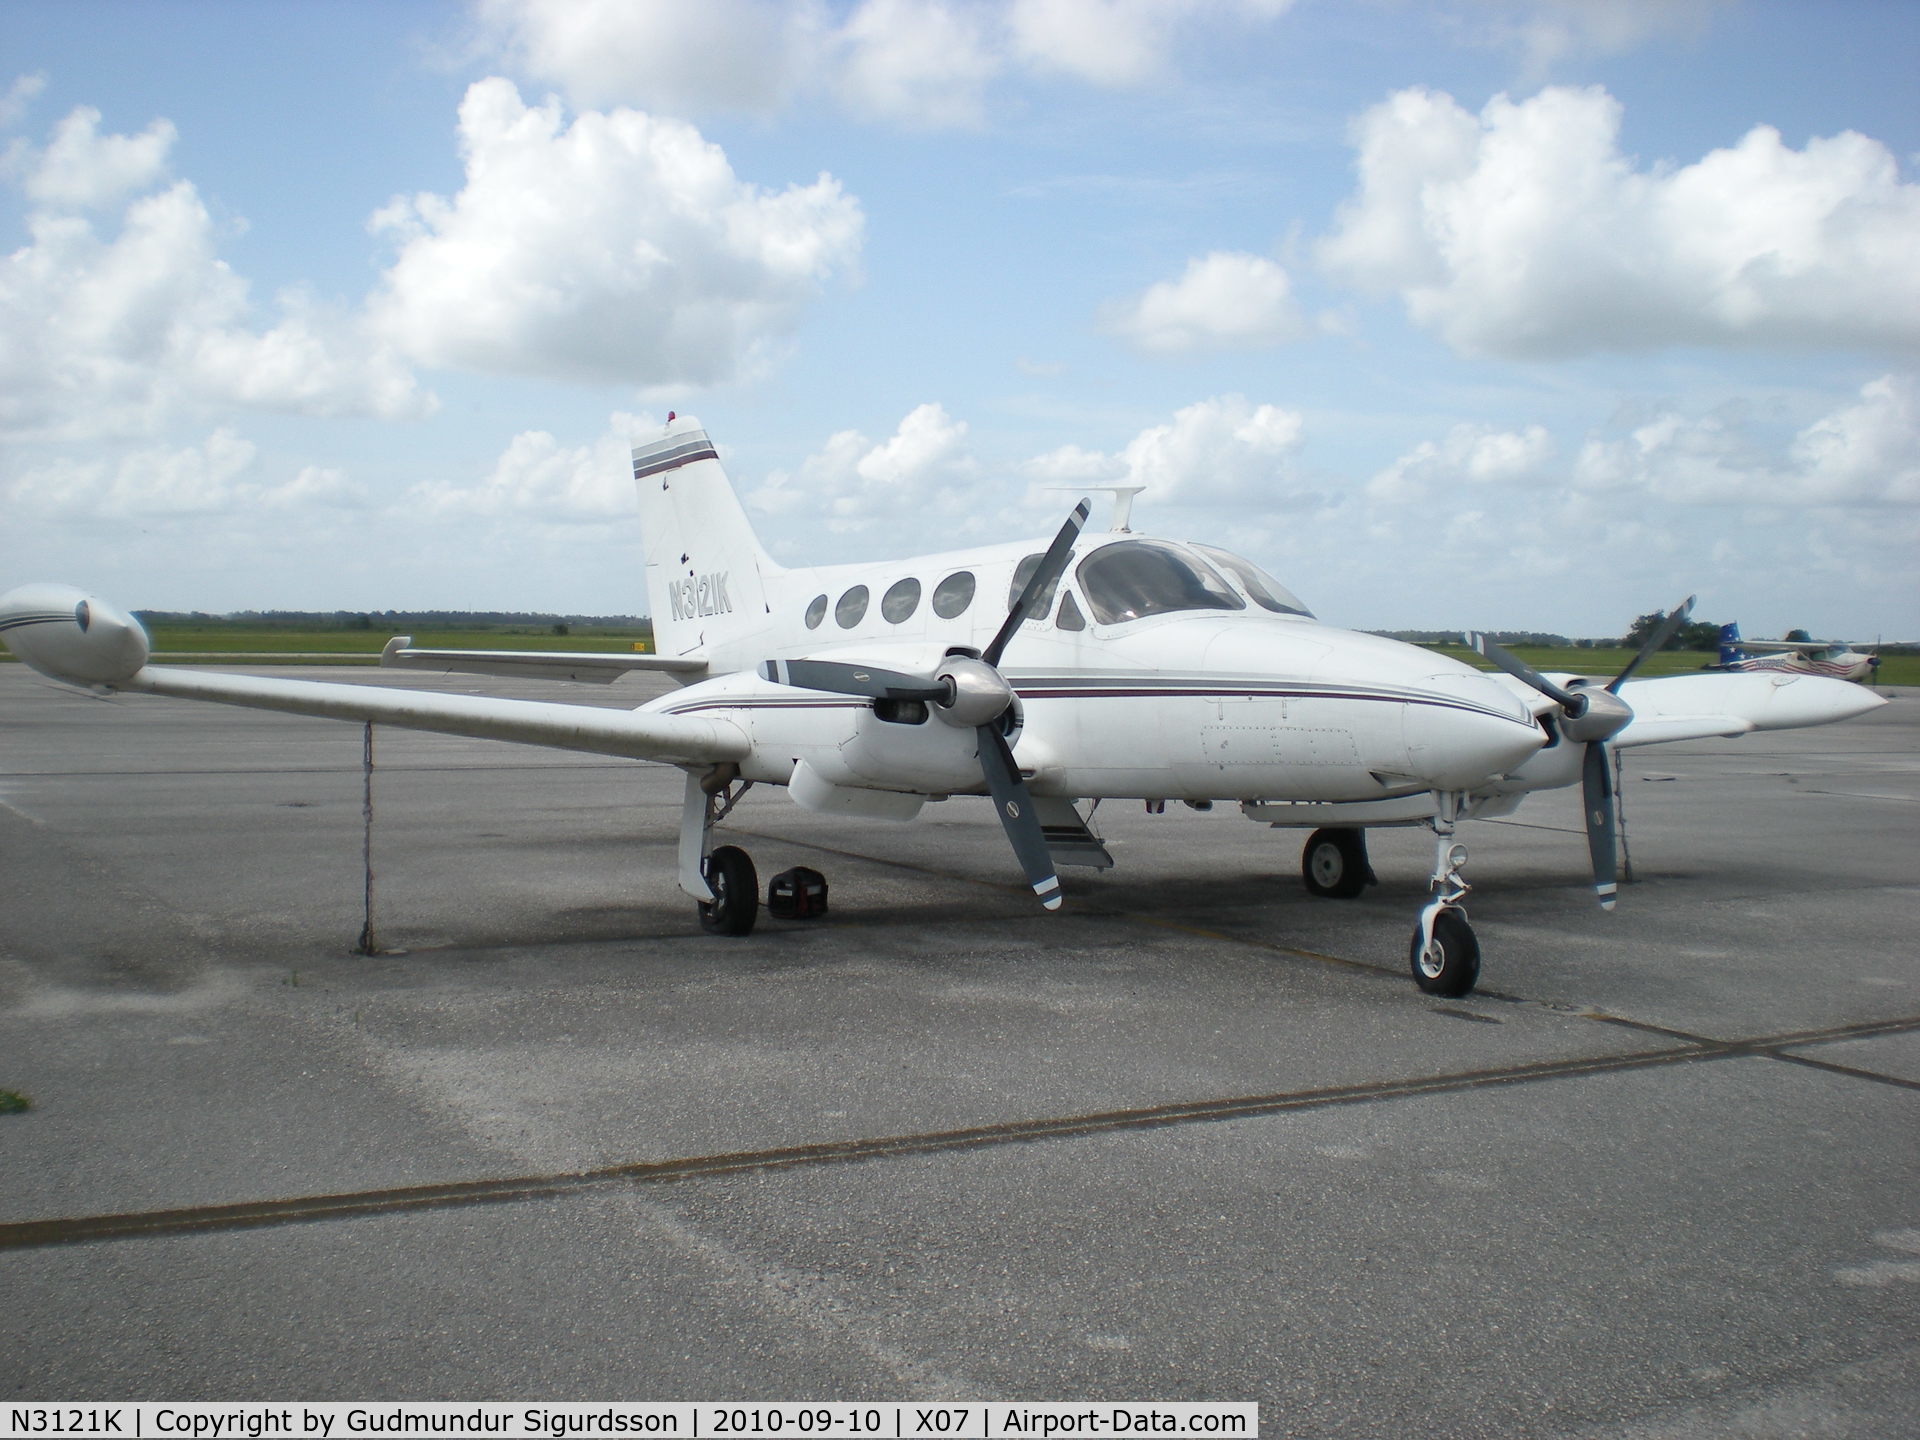 N3121K, 1968 Cessna 421 Golden Eagle C/N 421-0102, For Sale, $20000 OBO